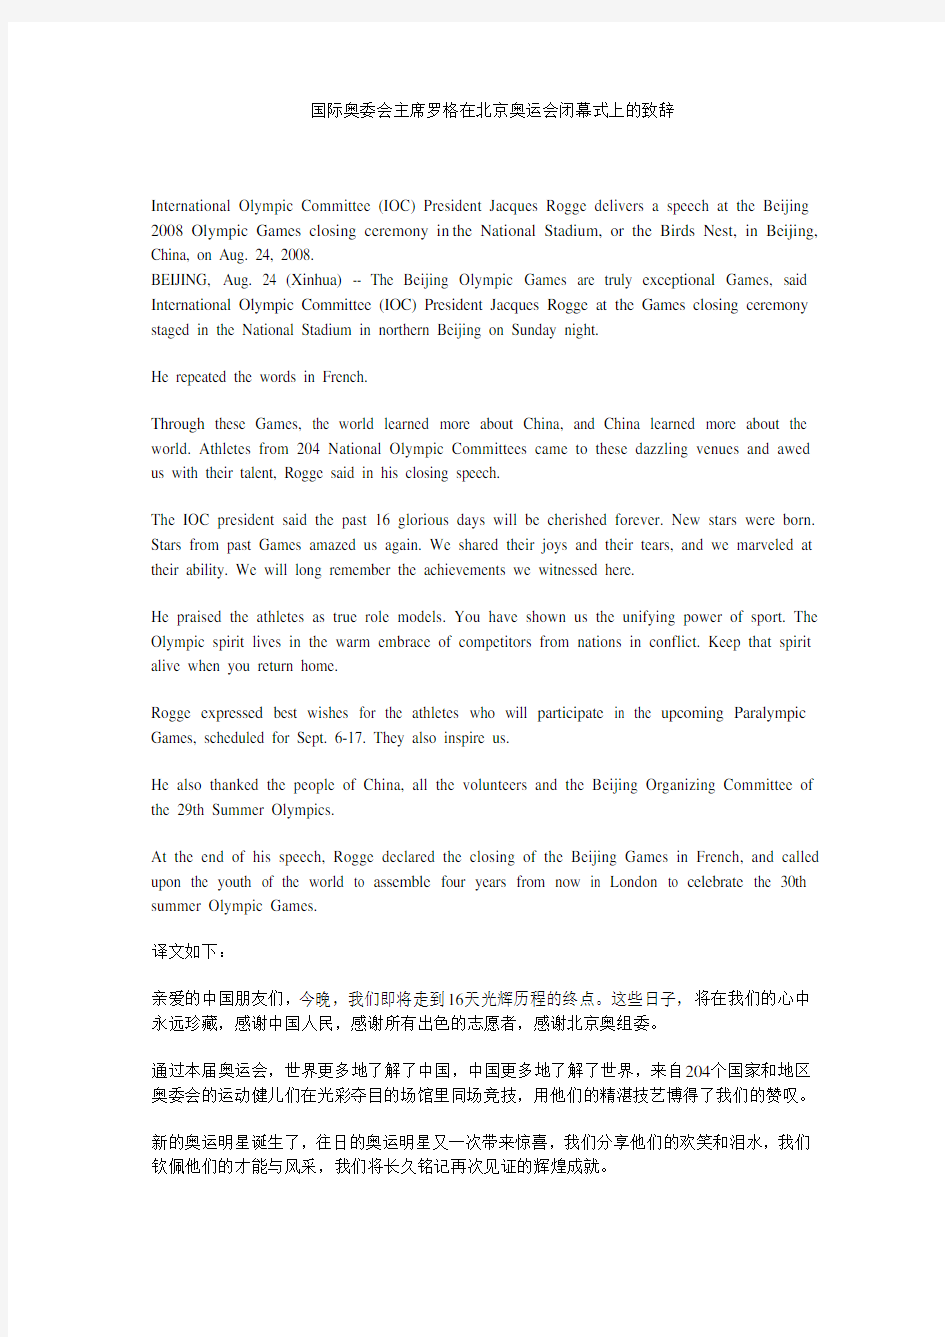 国际奥委会主席罗格在北京奥运会闭幕式上的致辞